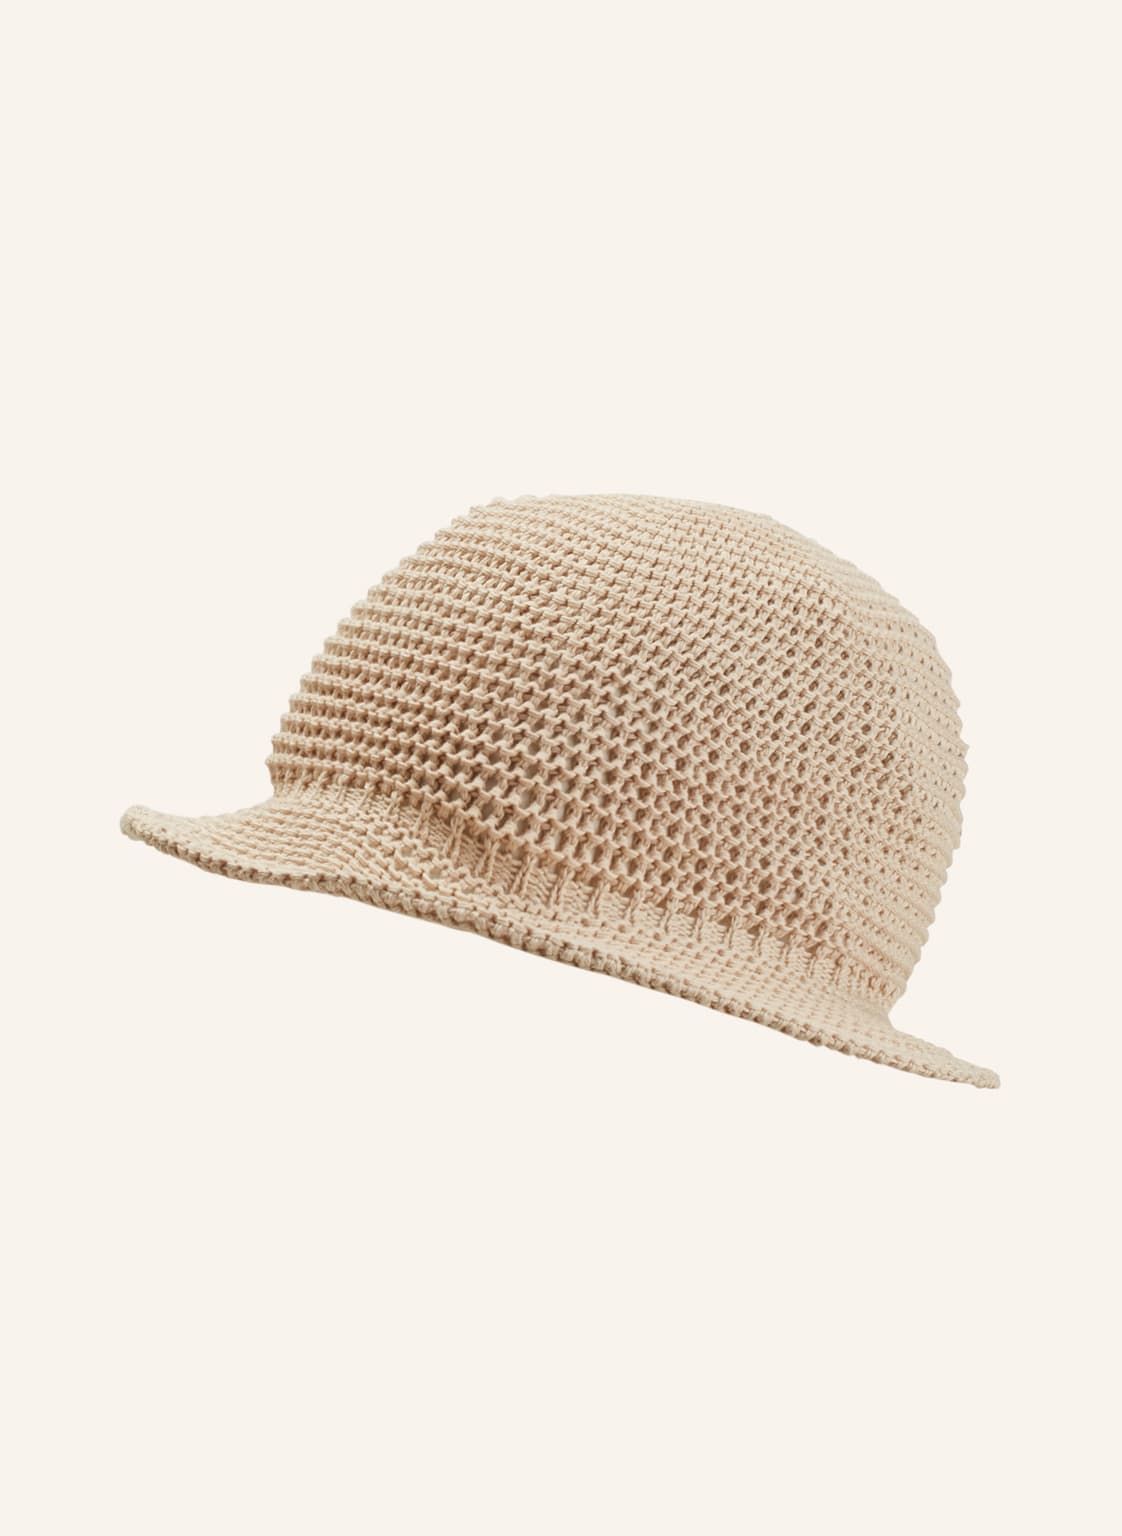 Image of Cashimar Bucket-Hat beige